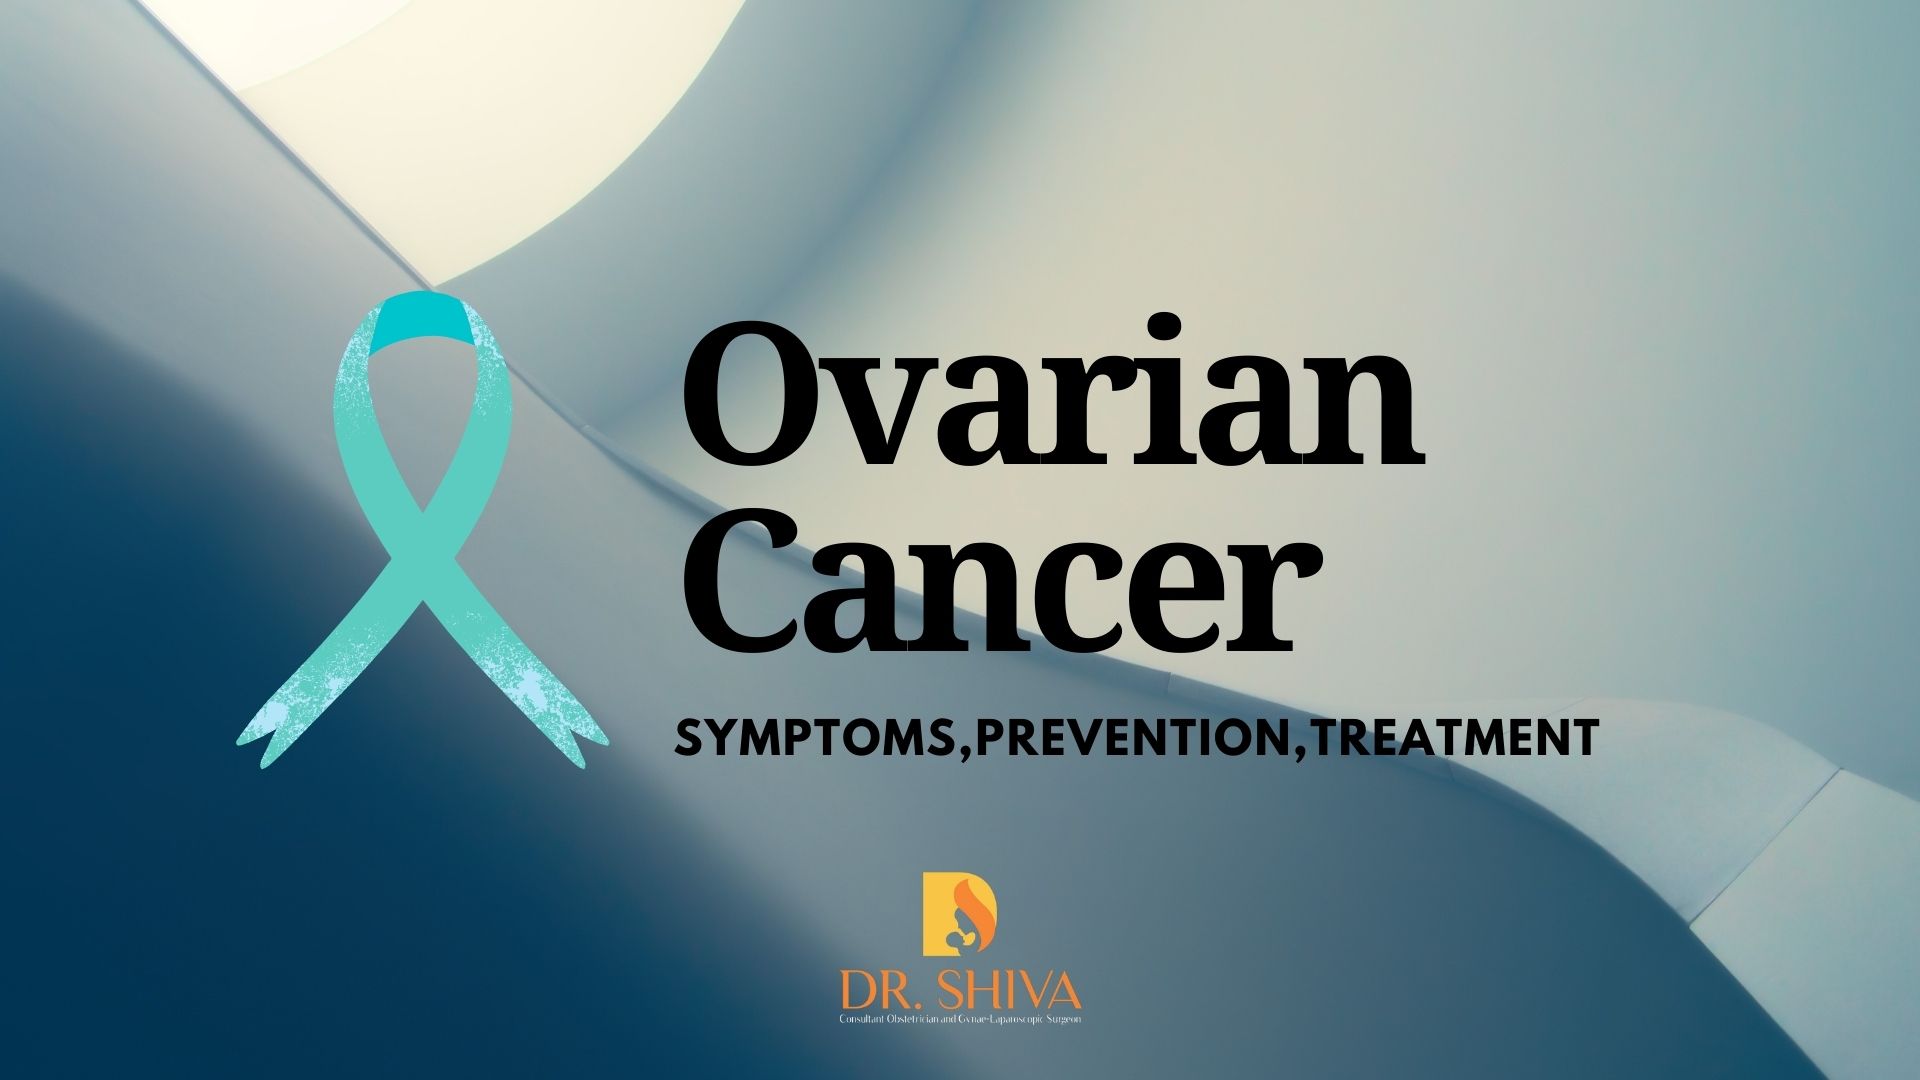 Dr Shiva harikrishnan - Ovarian Cancer